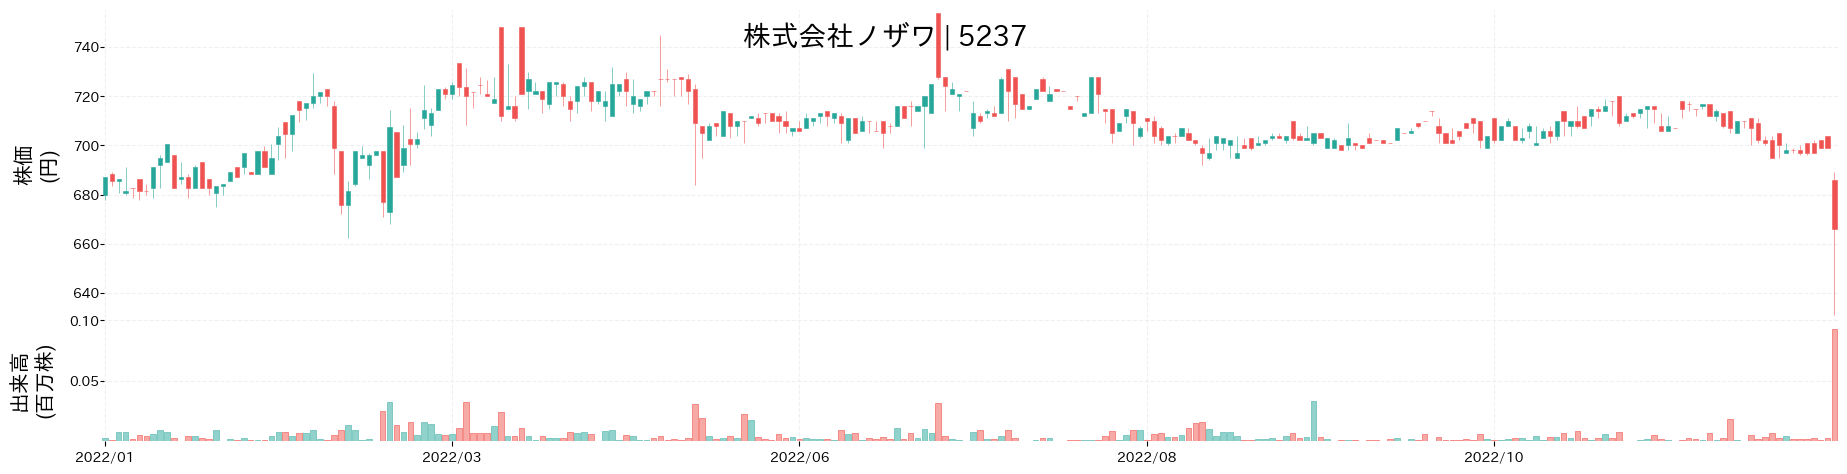 ノザワの株価推移(2022)